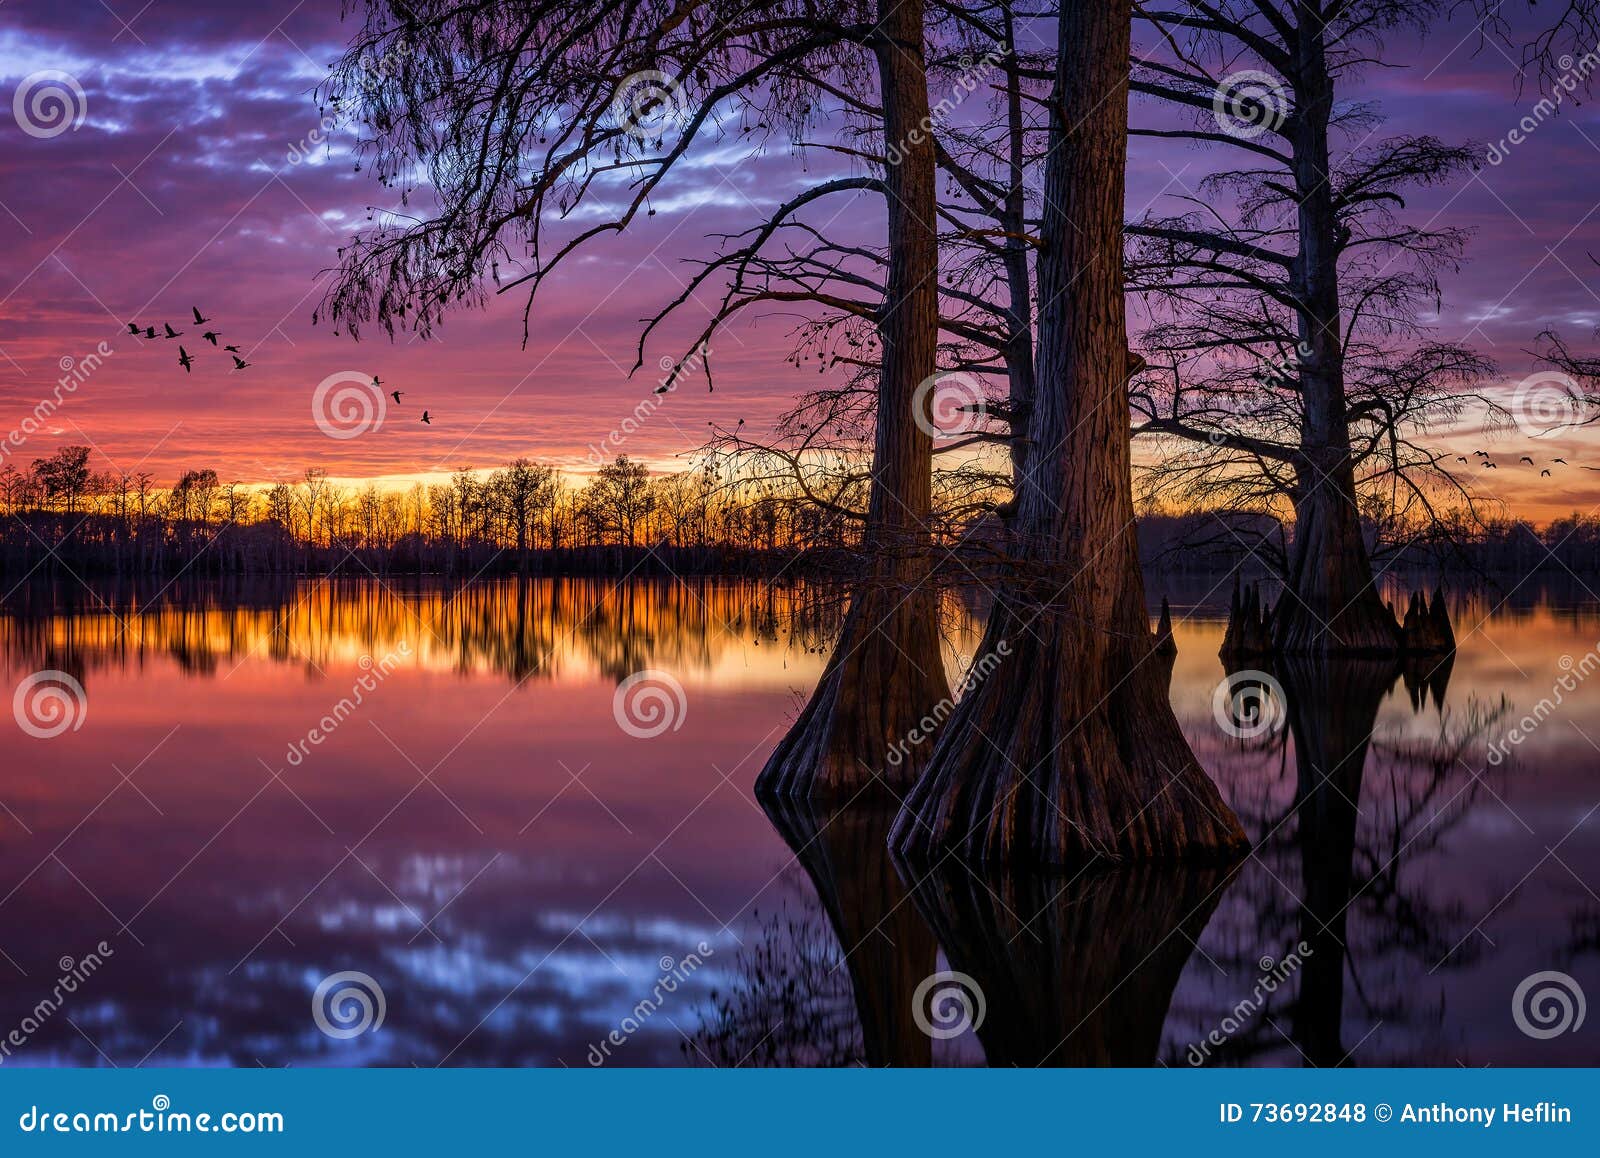 cypress lake, scenic sunset, southern illinois